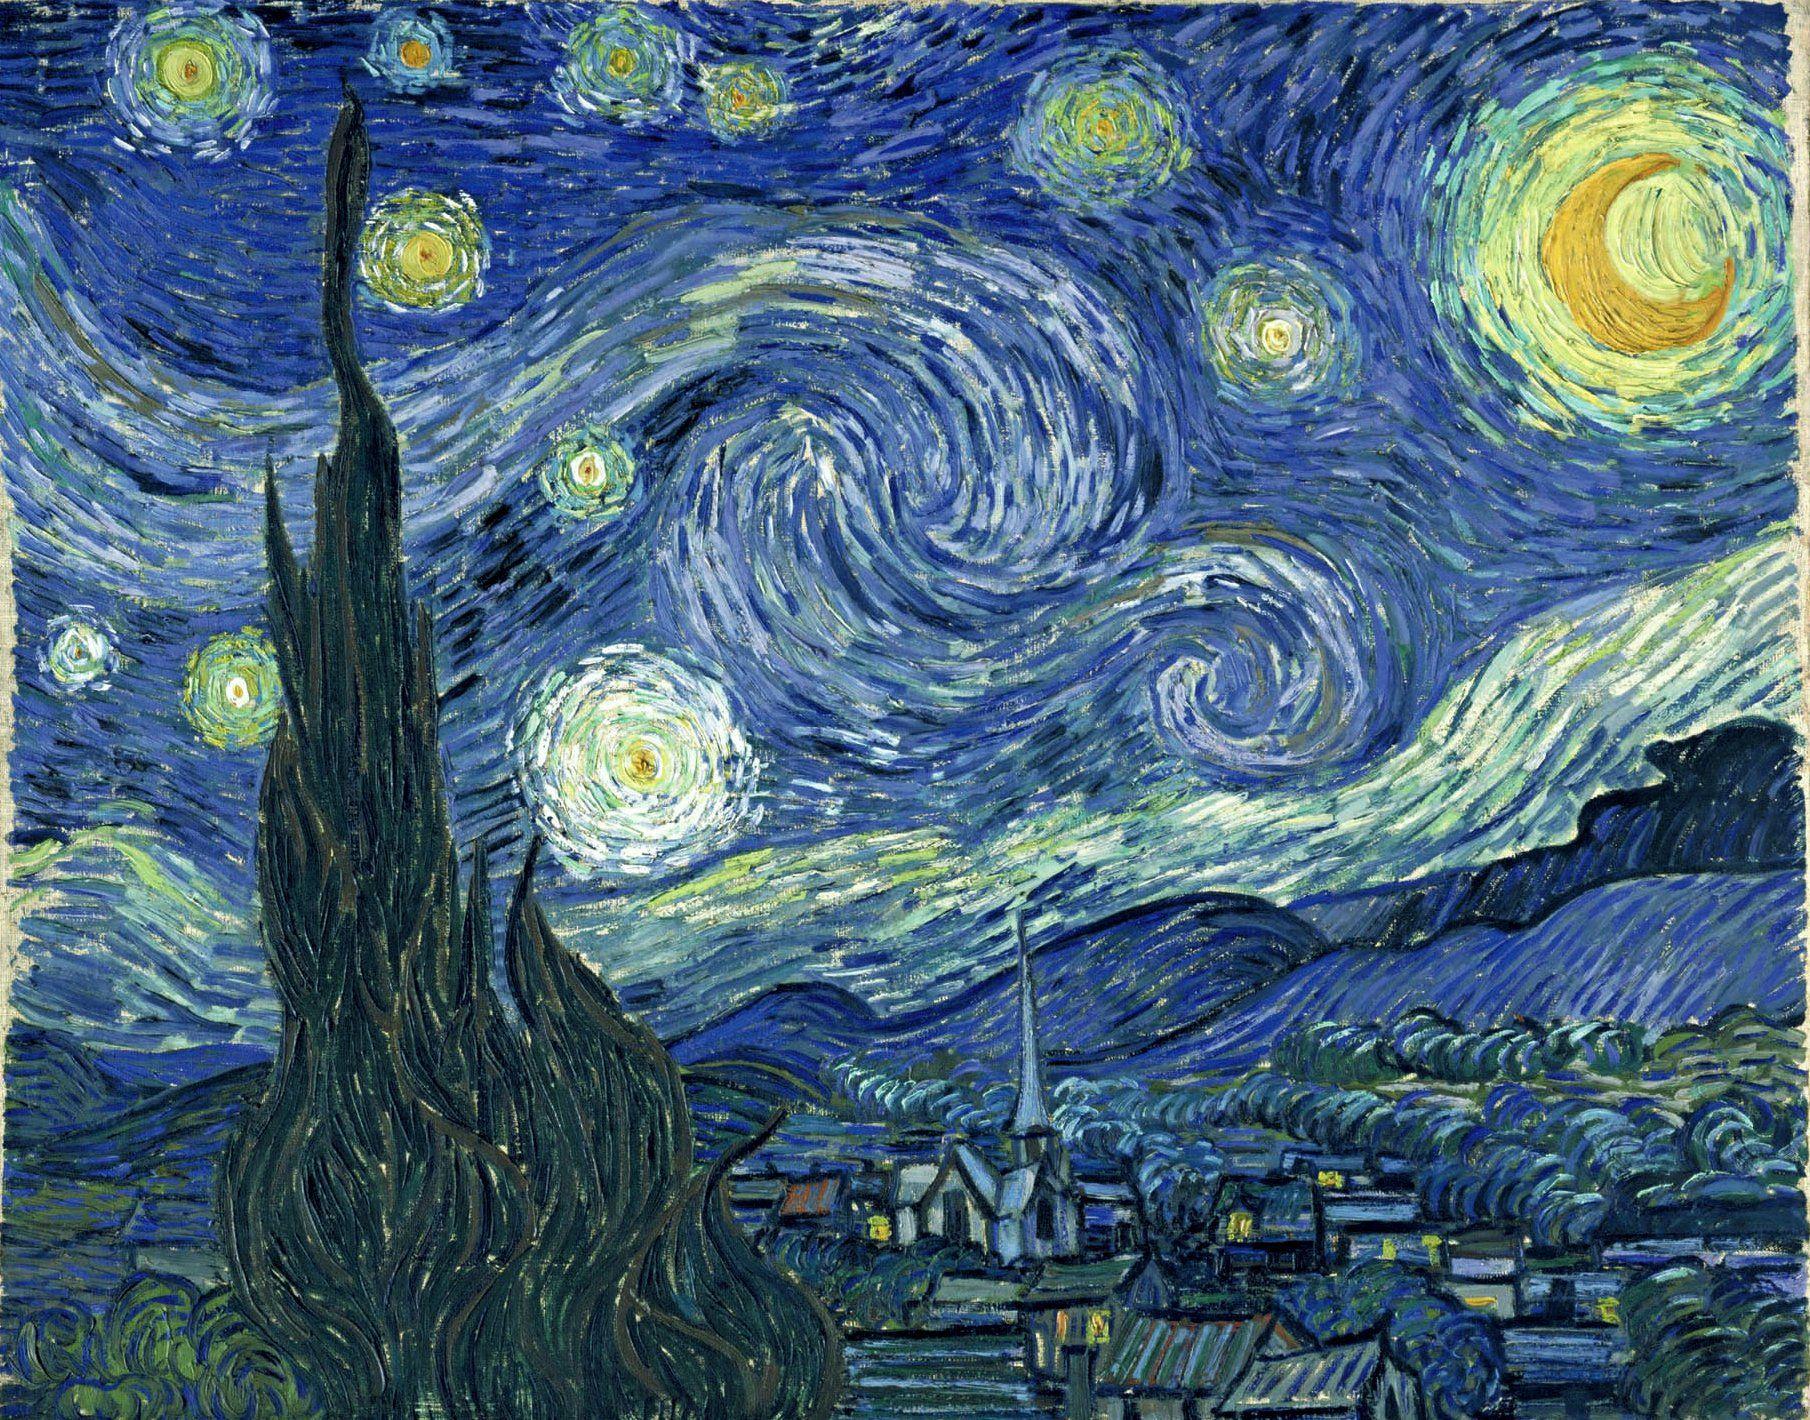 والپیپر خیلی خوب و دیدنی از آثار زیبای ونسان ونگوگ شب پر ستاره 